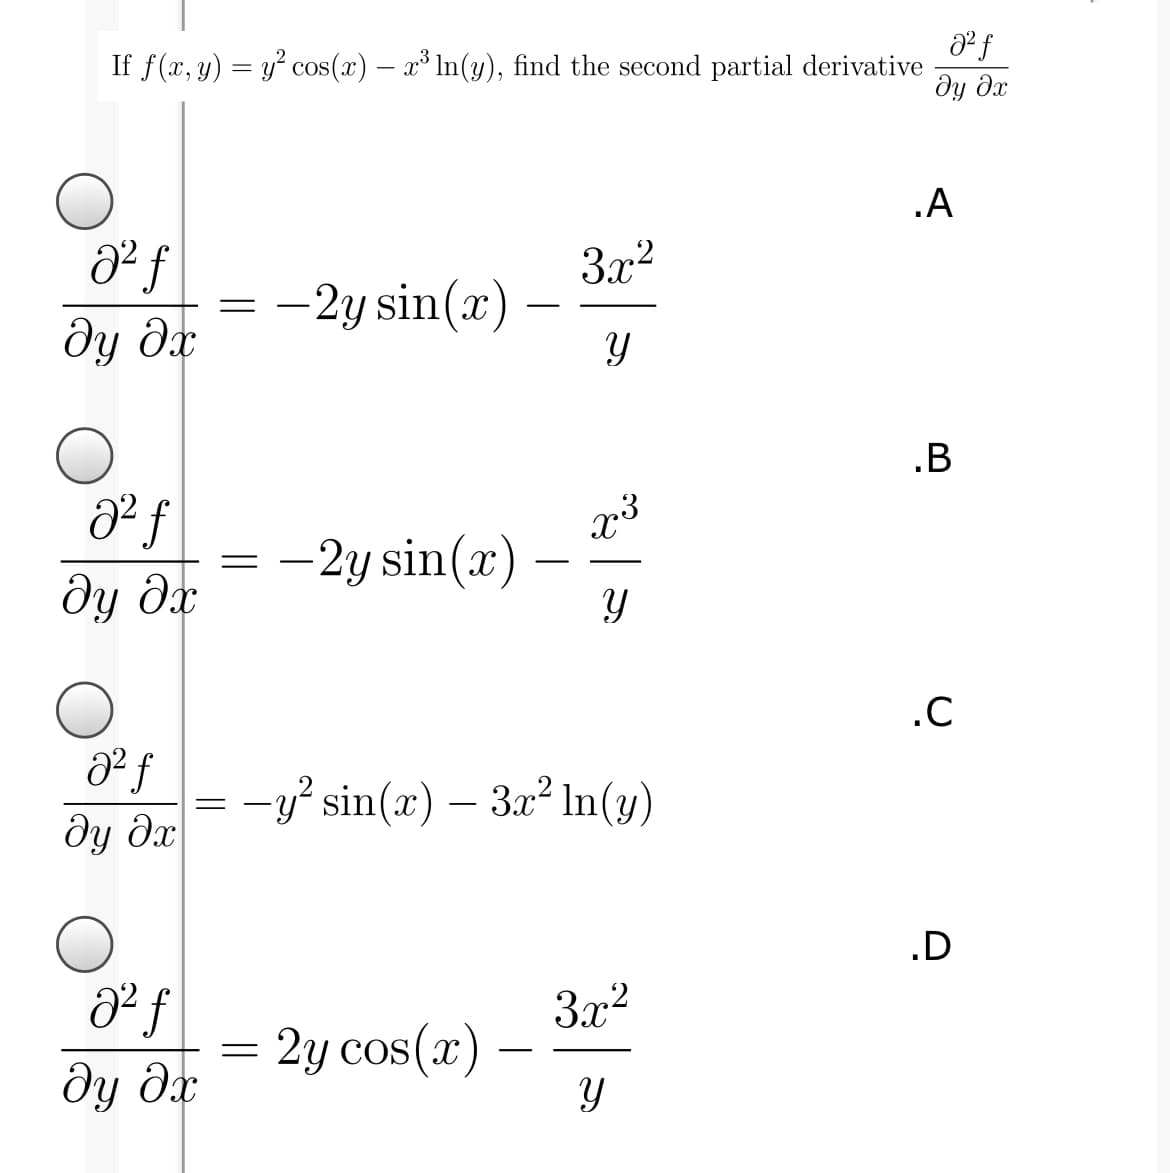 If f(x, y) = y° cos(x) – x³ In(y), find the second partial derivative
ду дх
.A
3x2
–2y sin(x)
ду дх
.B
d² f
-2y sin(x) -
-
ду дх
.C
= -y? sin(x) – 3x² In(y)
dy dx
.D
dº f
ду дх
3x2
2y cos(x)
